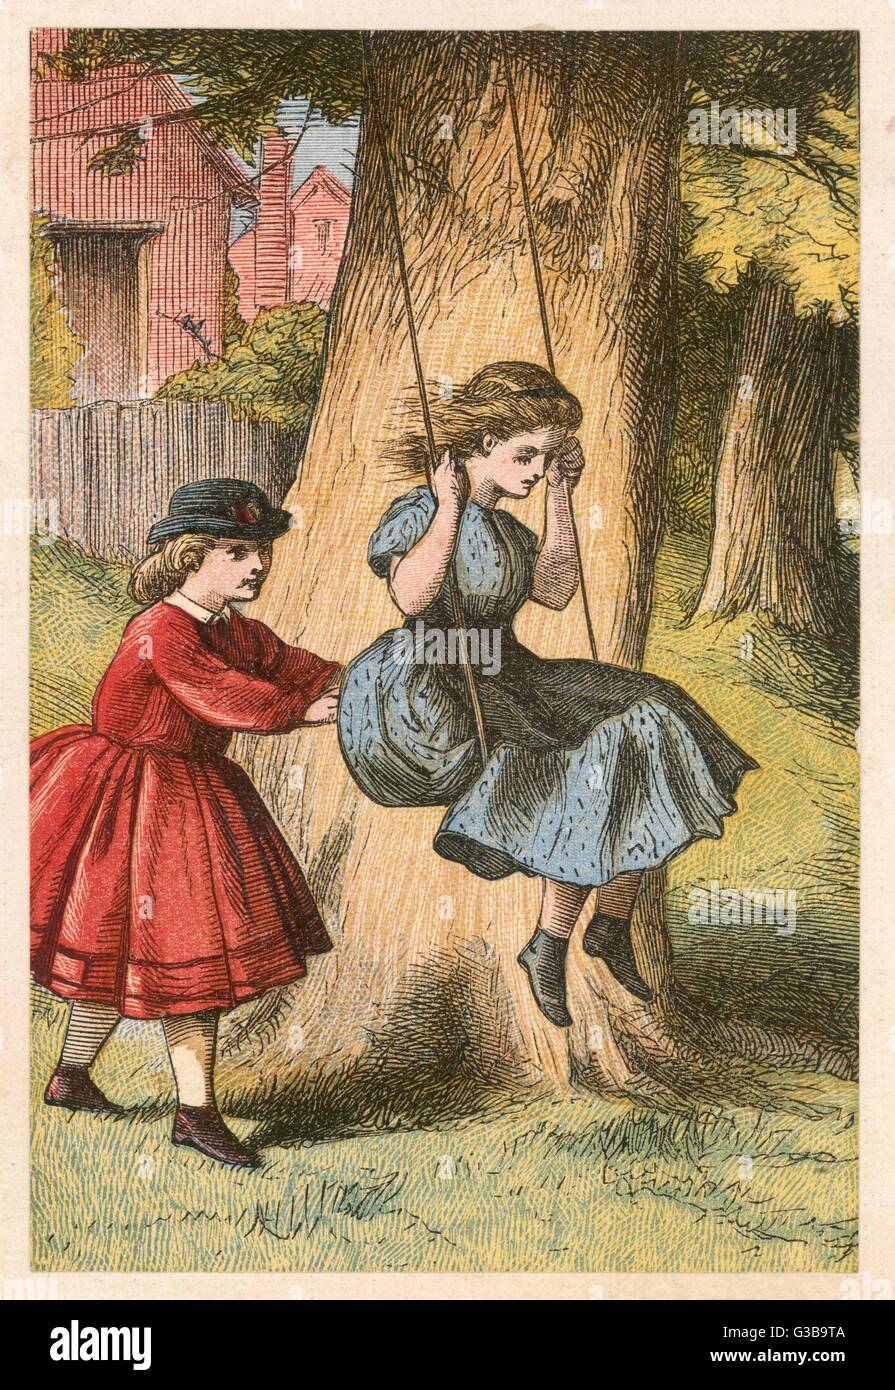 Poussé par sa compagne, une fille joue sur une balançoire. Date : vers 1860 Banque D'Images